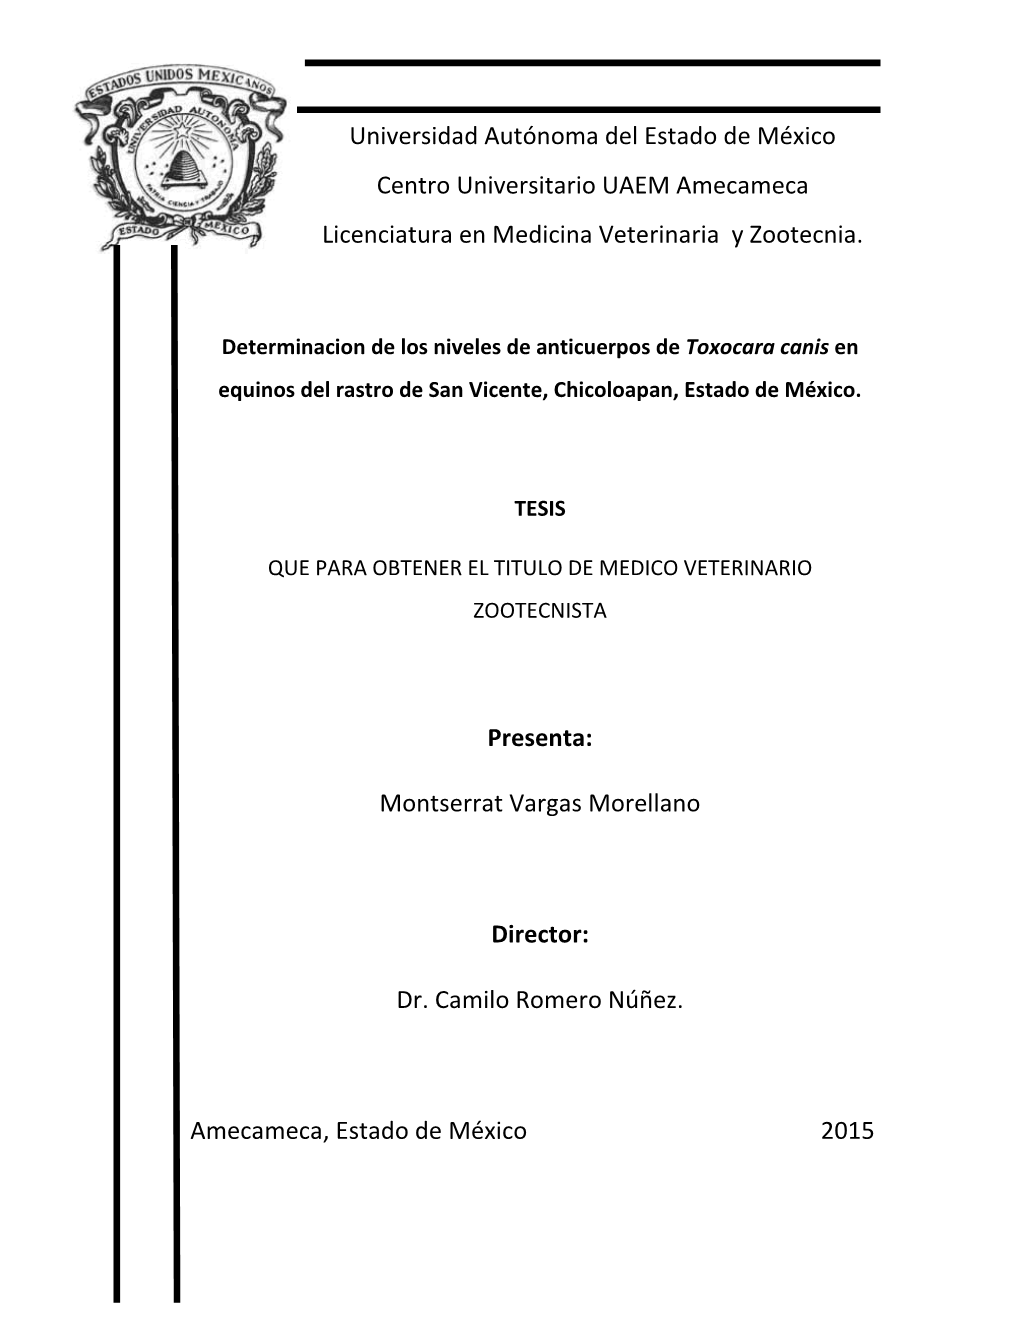 Universidad Autónoma Del Estado De México Centro Universitario UAEM Amecameca Licenciatura En Medicina Veterinaria Y Zootecnia